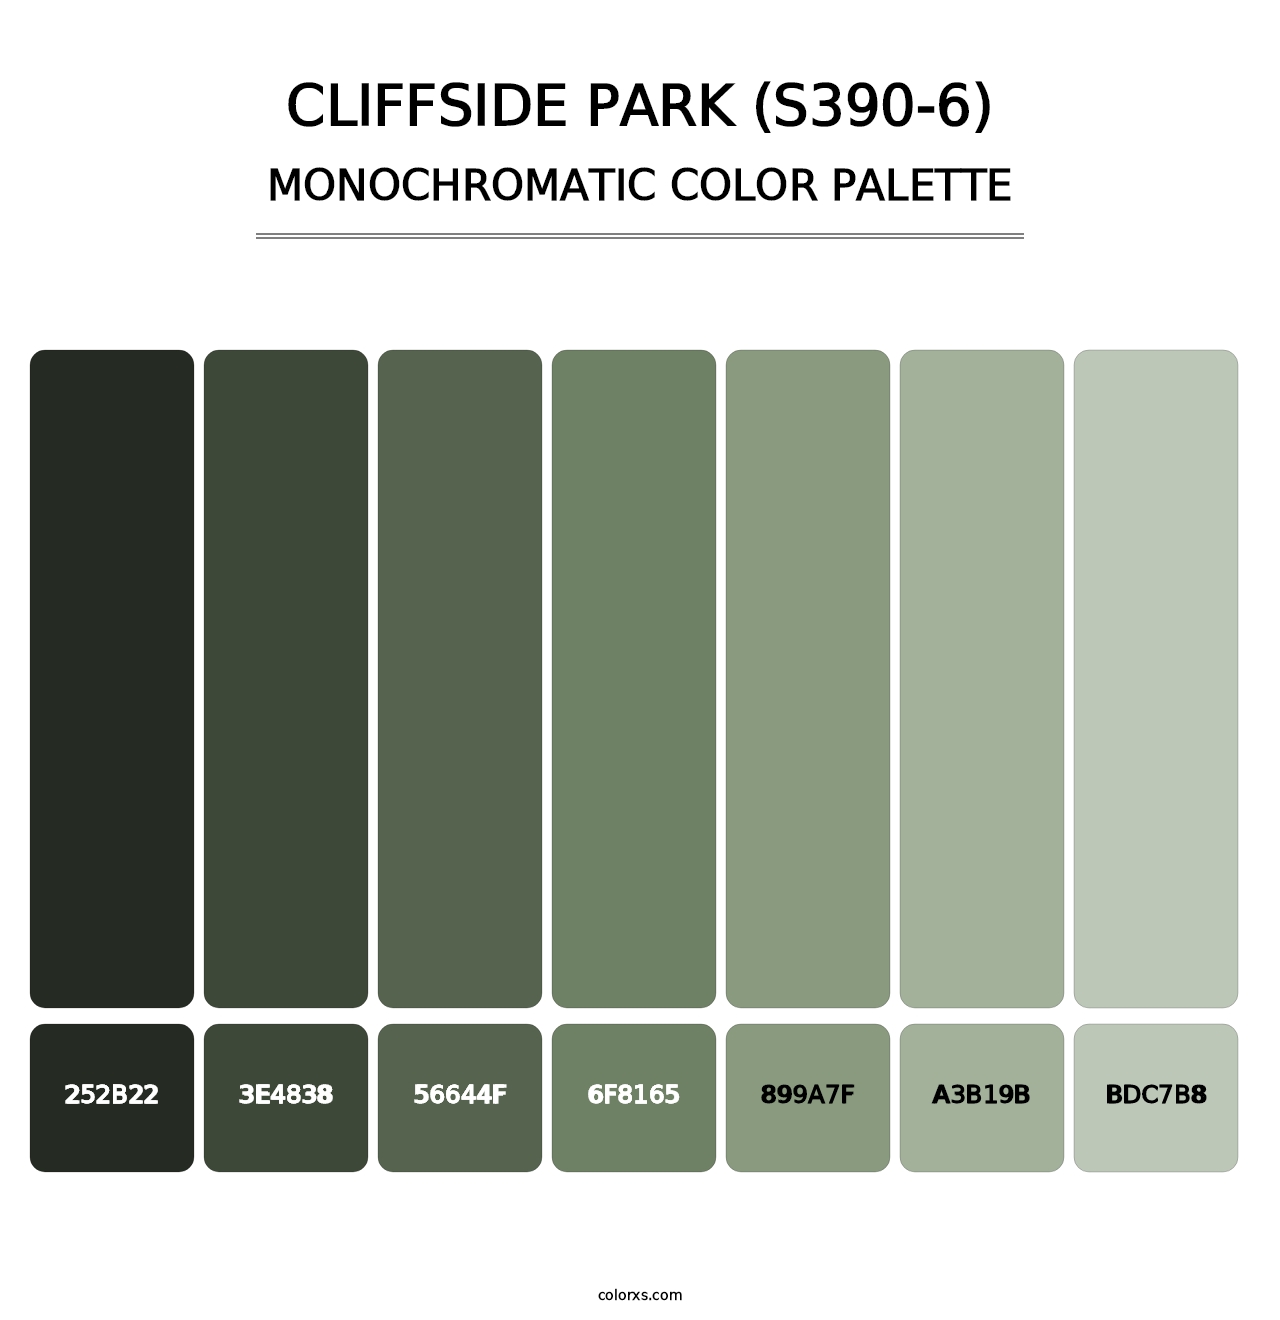 Cliffside Park (S390-6) - Monochromatic Color Palette